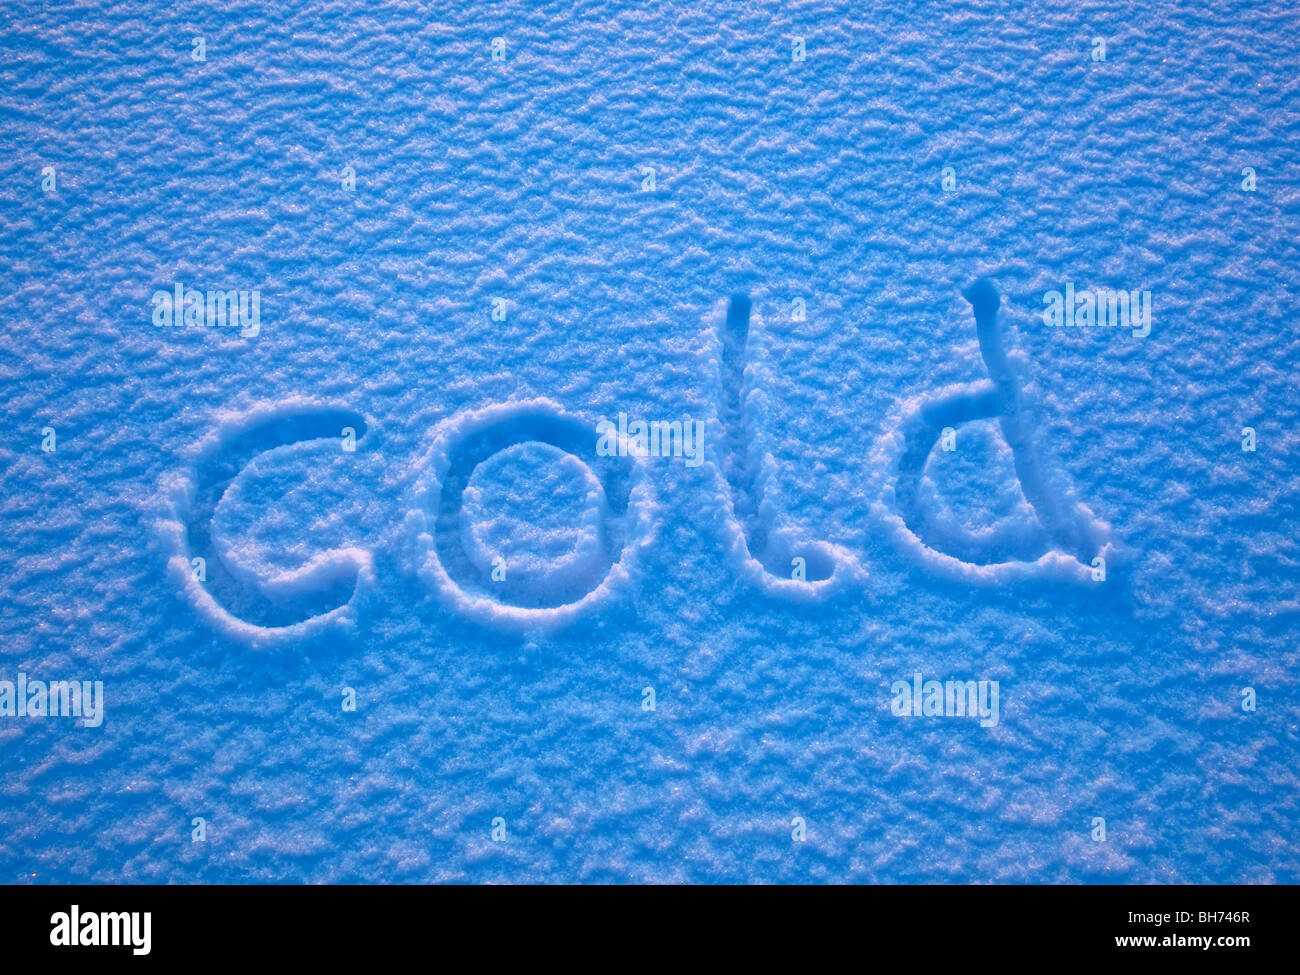 Le mot 'cold' énoncée dans la neige. Banque D'Images